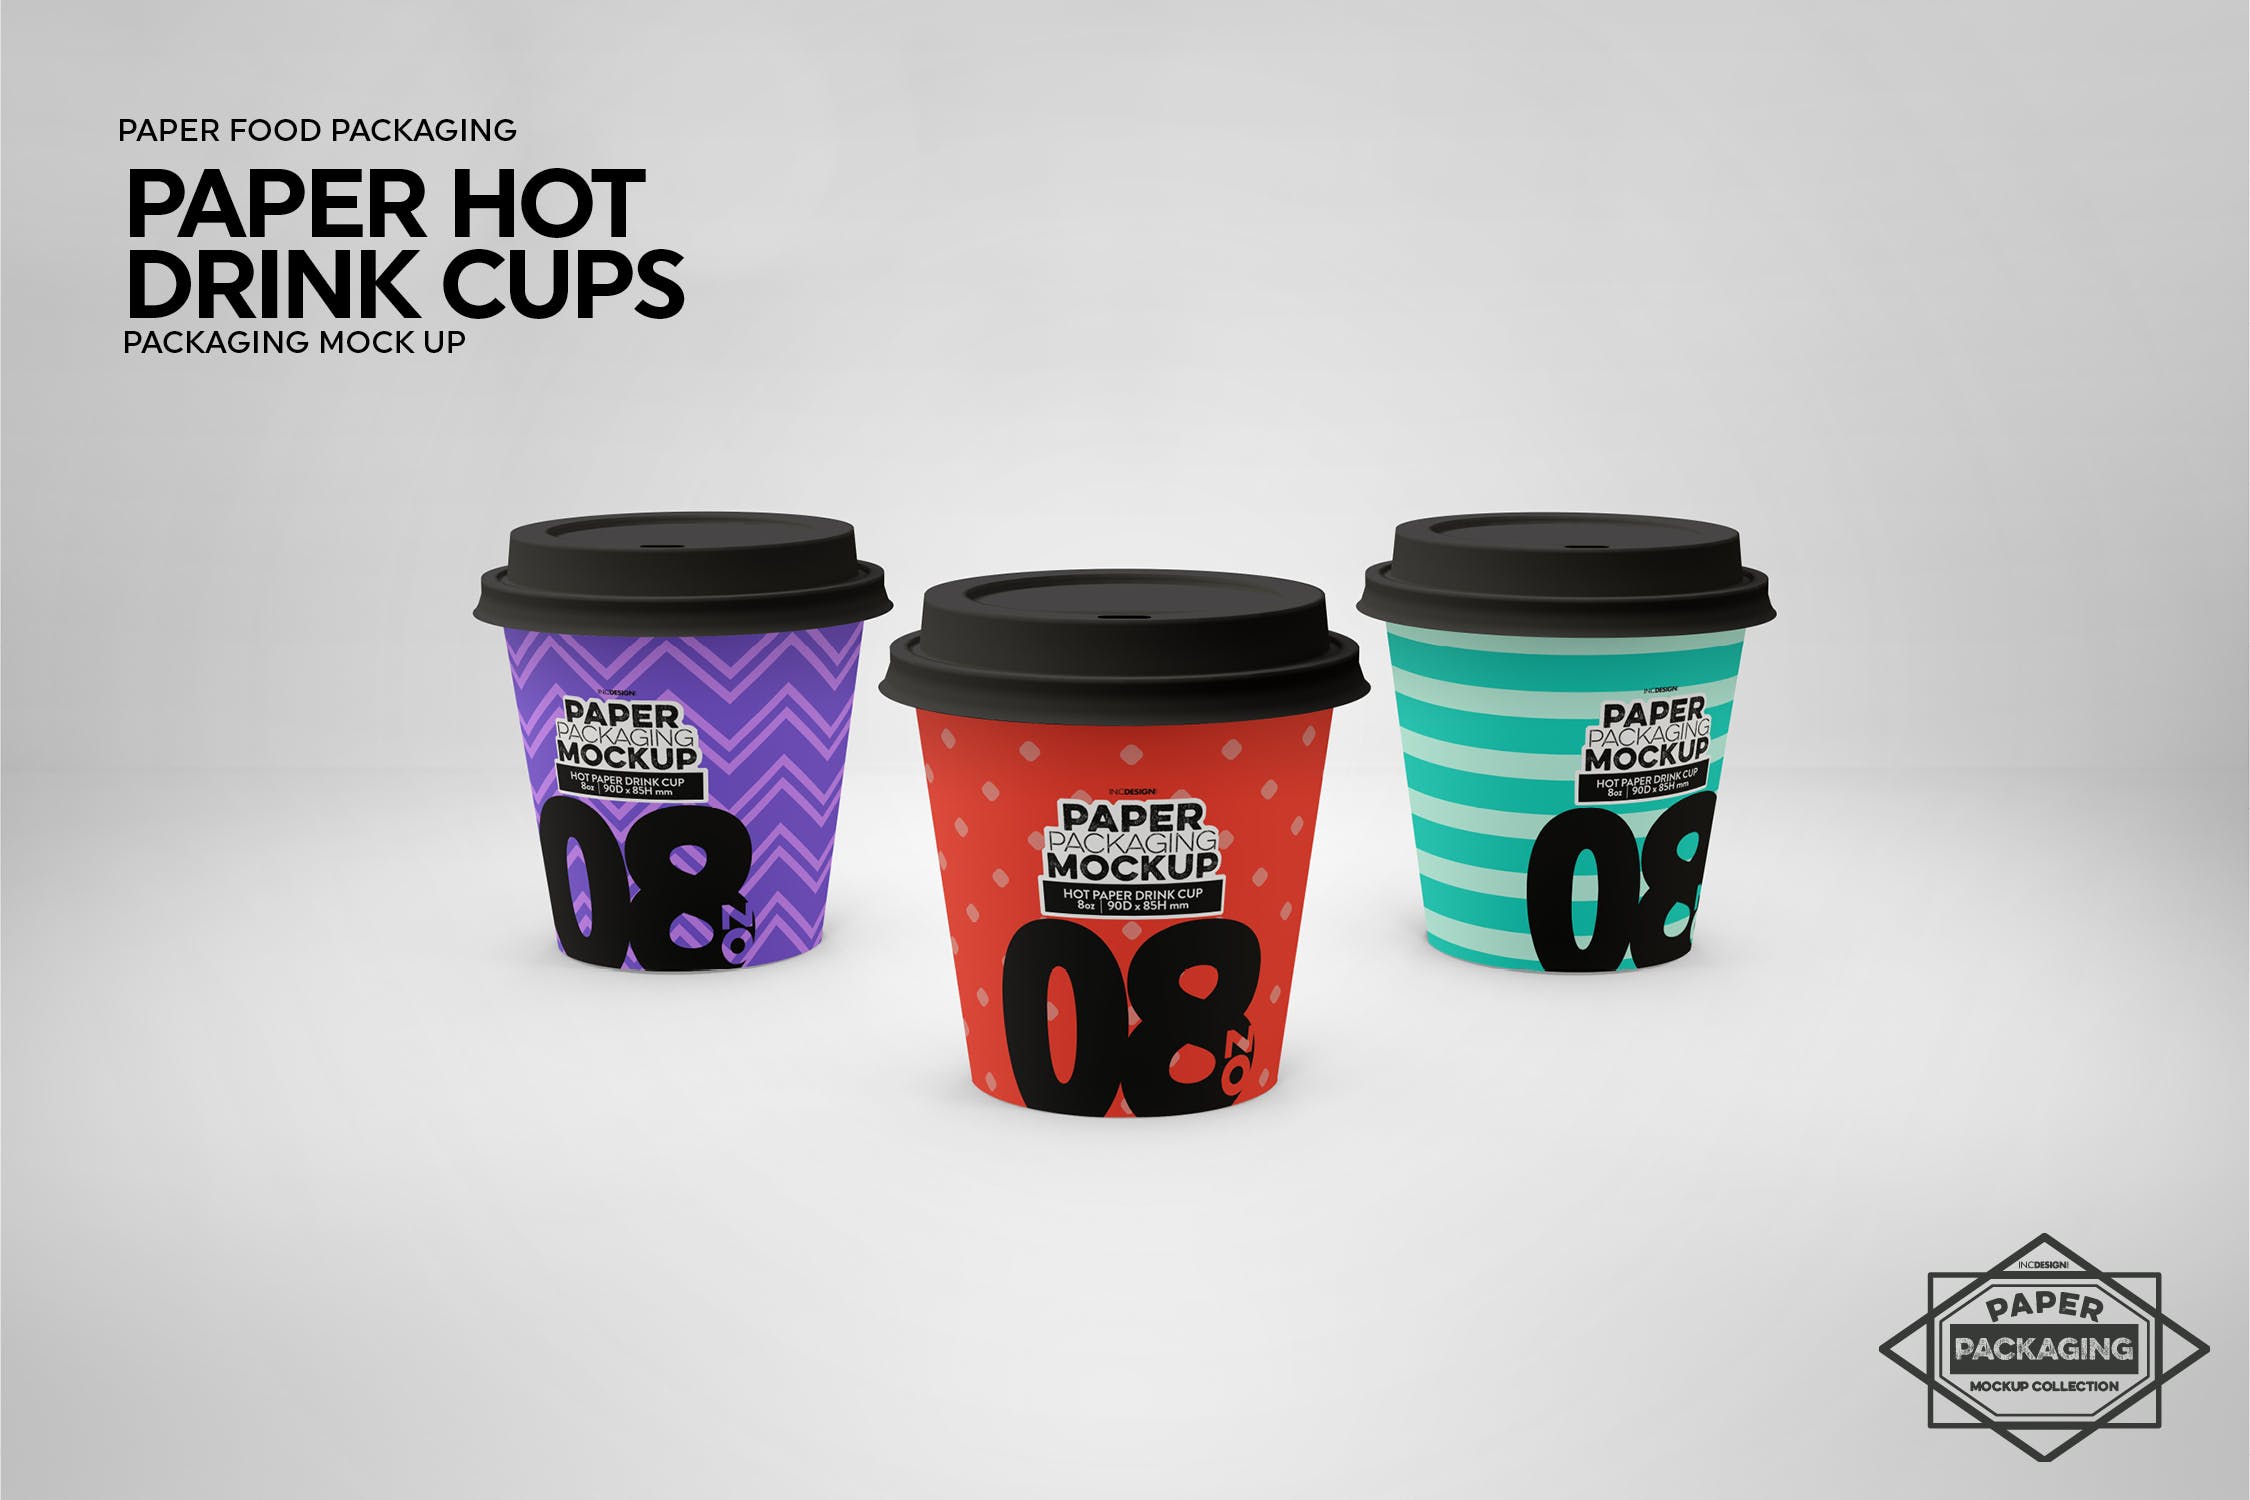 热饮一次性纸杯外观设计蚂蚁素材精选 Paper Hot Drink Cups Packaging Mockup插图(14)